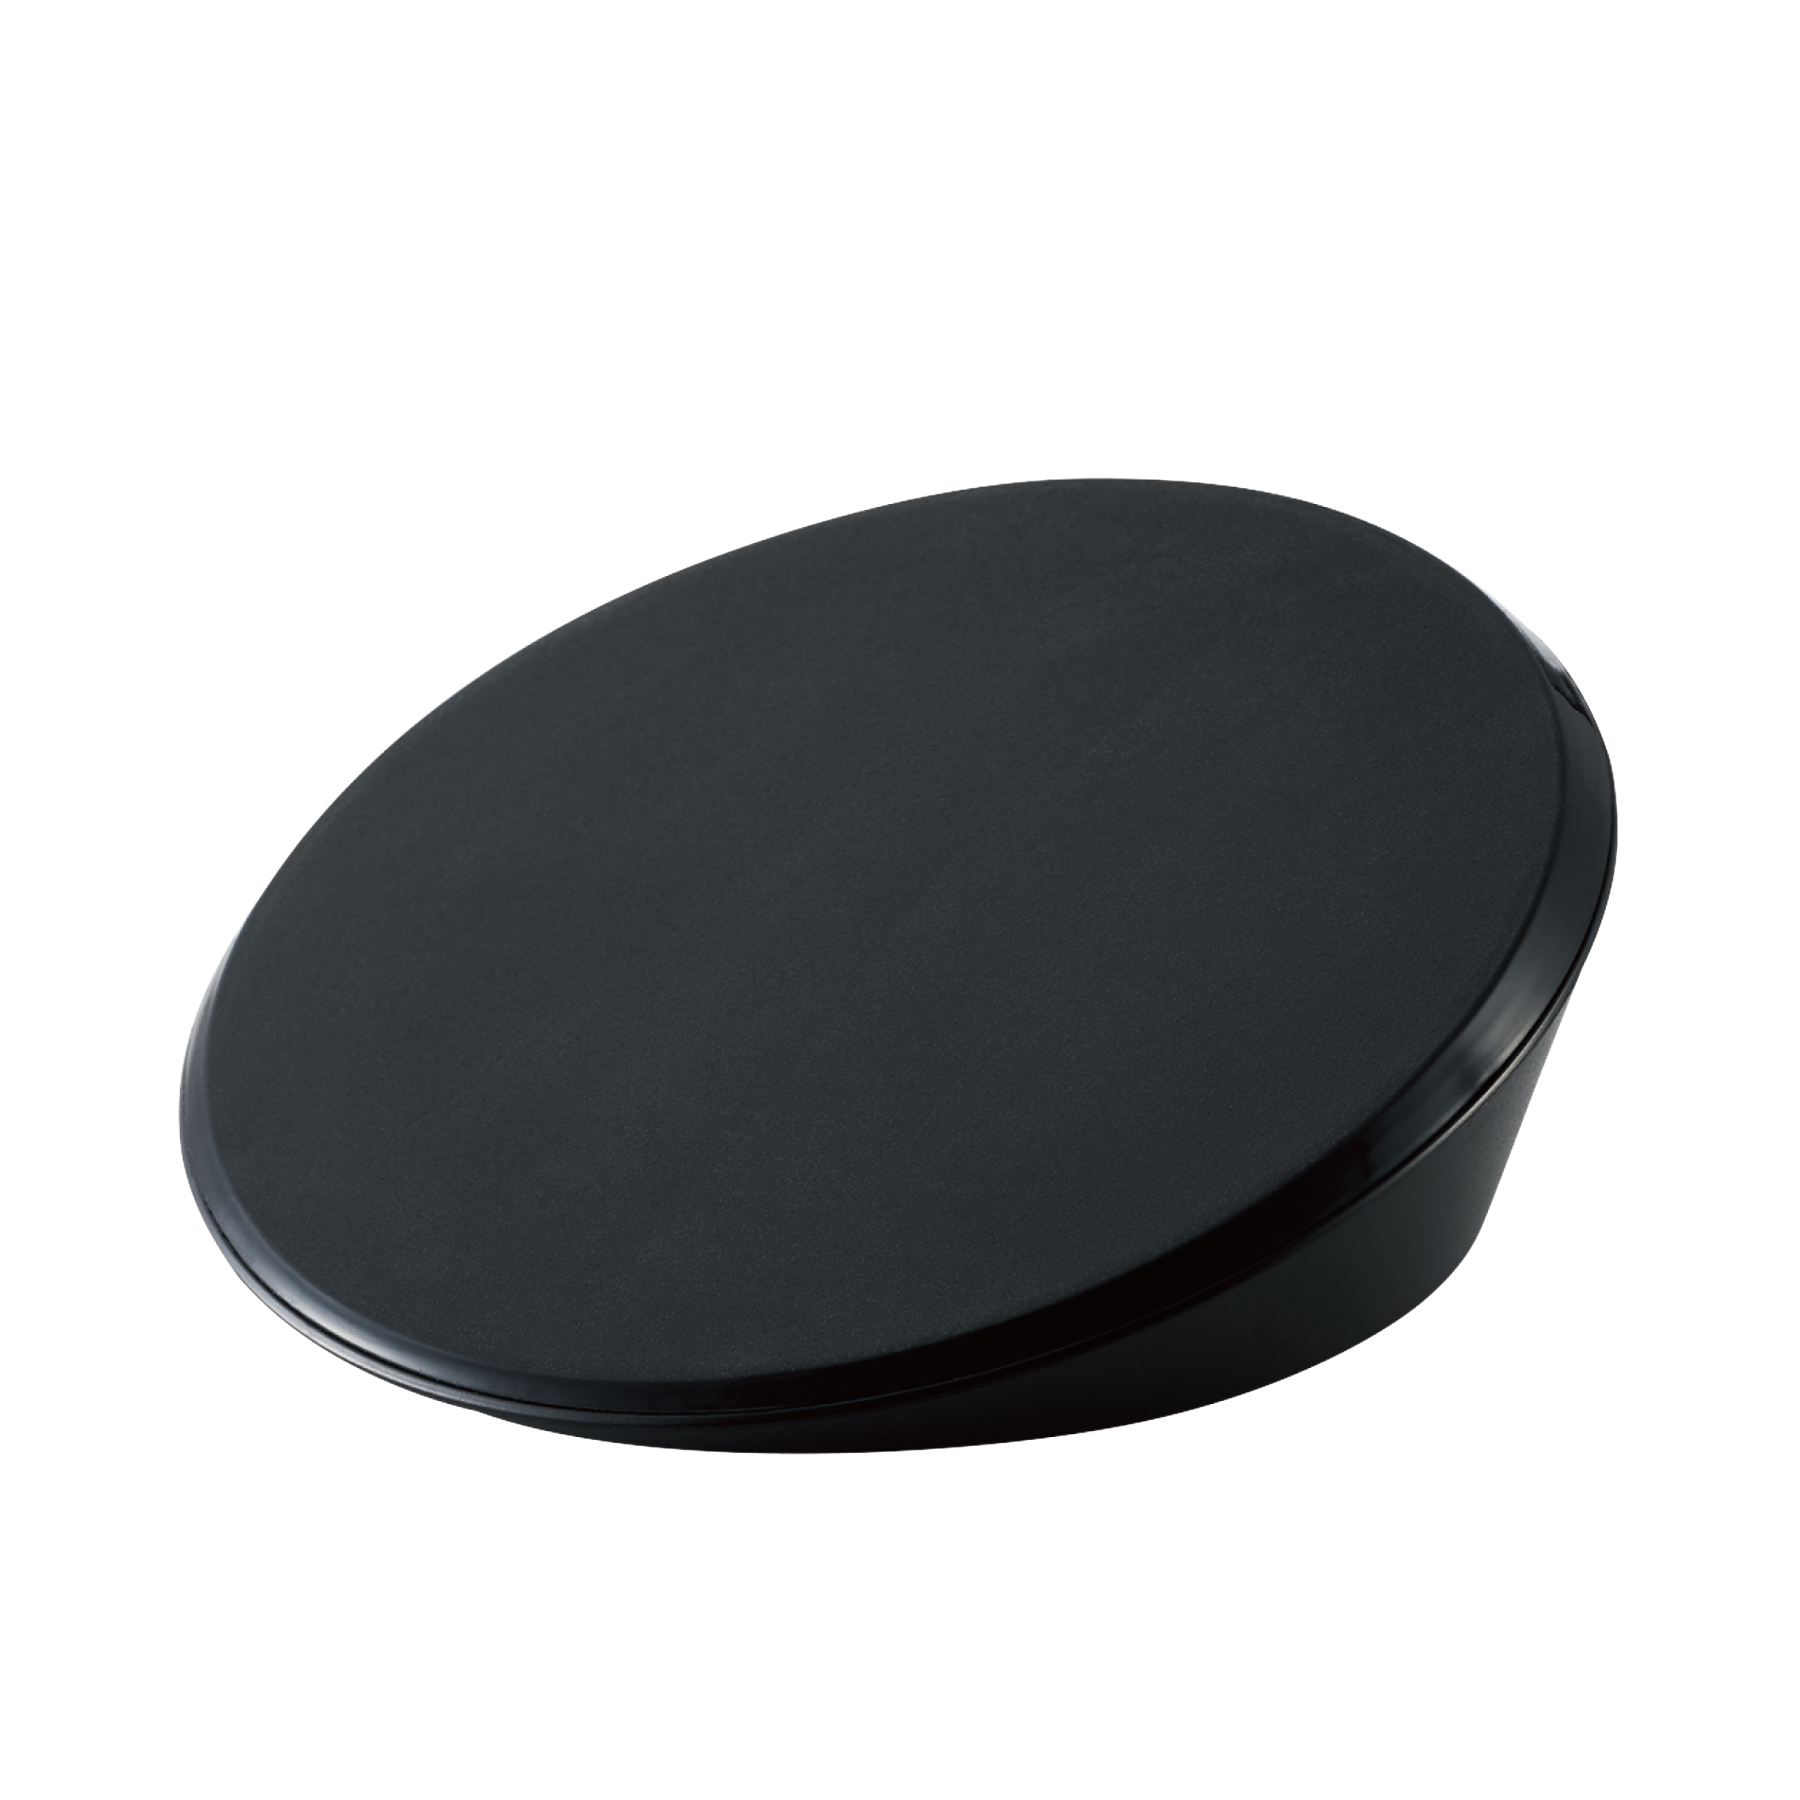 Trackball Angle Disc Pad